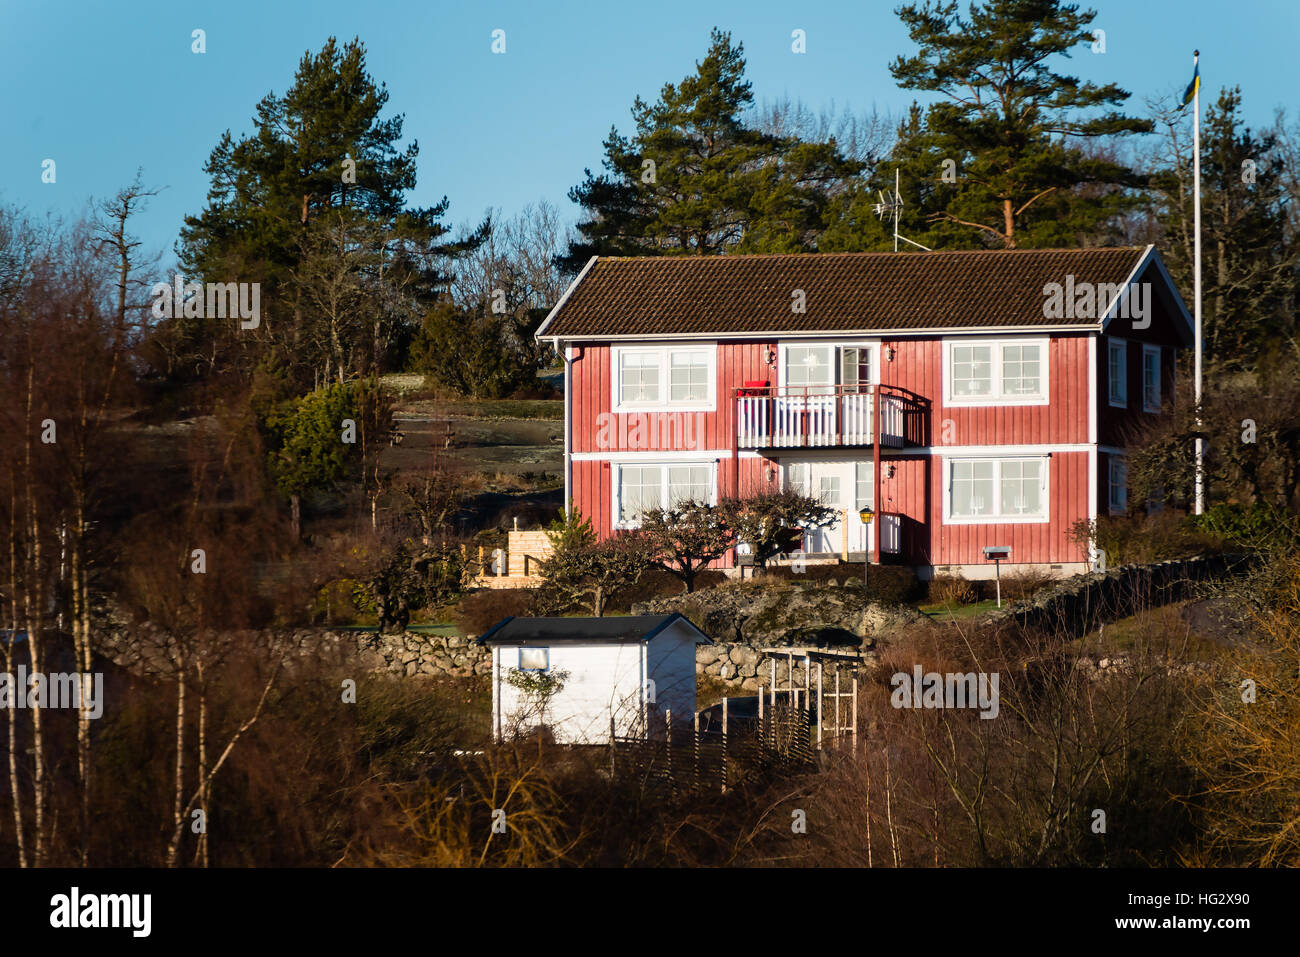 Ronneby, Suède - 2 janvier 2017 : documentaire de style rural suédois. Home en bois rouge sur une colline entouré de forêts. Banque D'Images